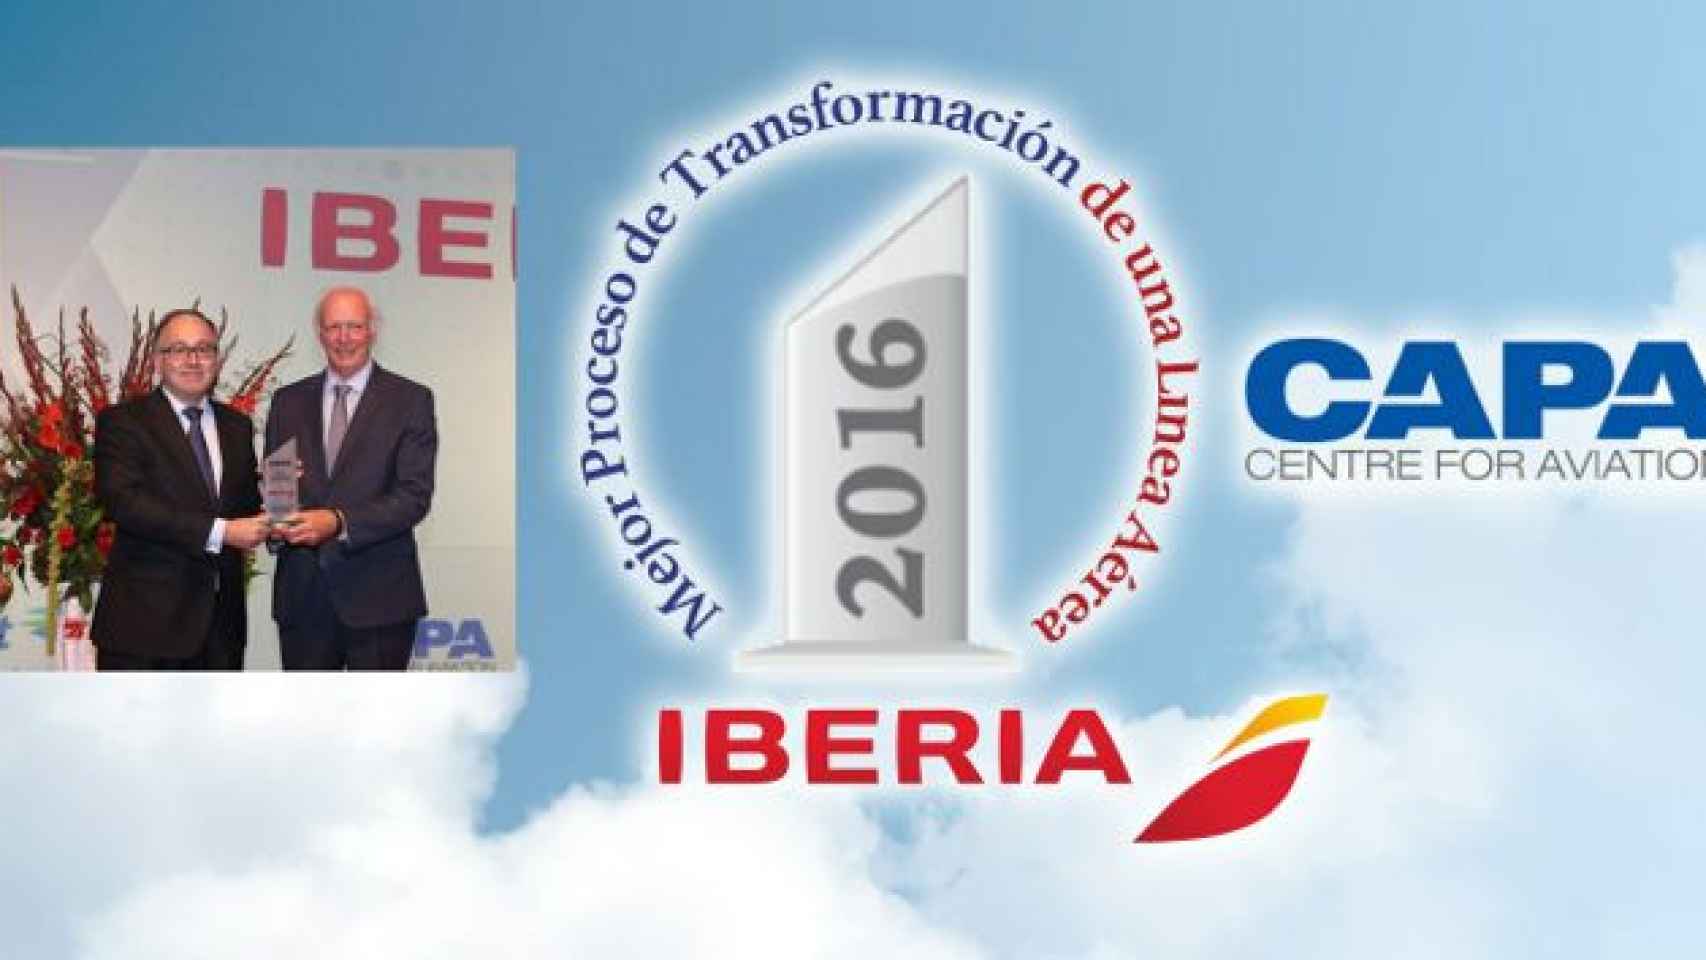 El presidente de Iberia, Luis Gallego, recoje el premio a la Mejor Transformación de una Línea Aérea en 2016 en la gala anual de CAPA